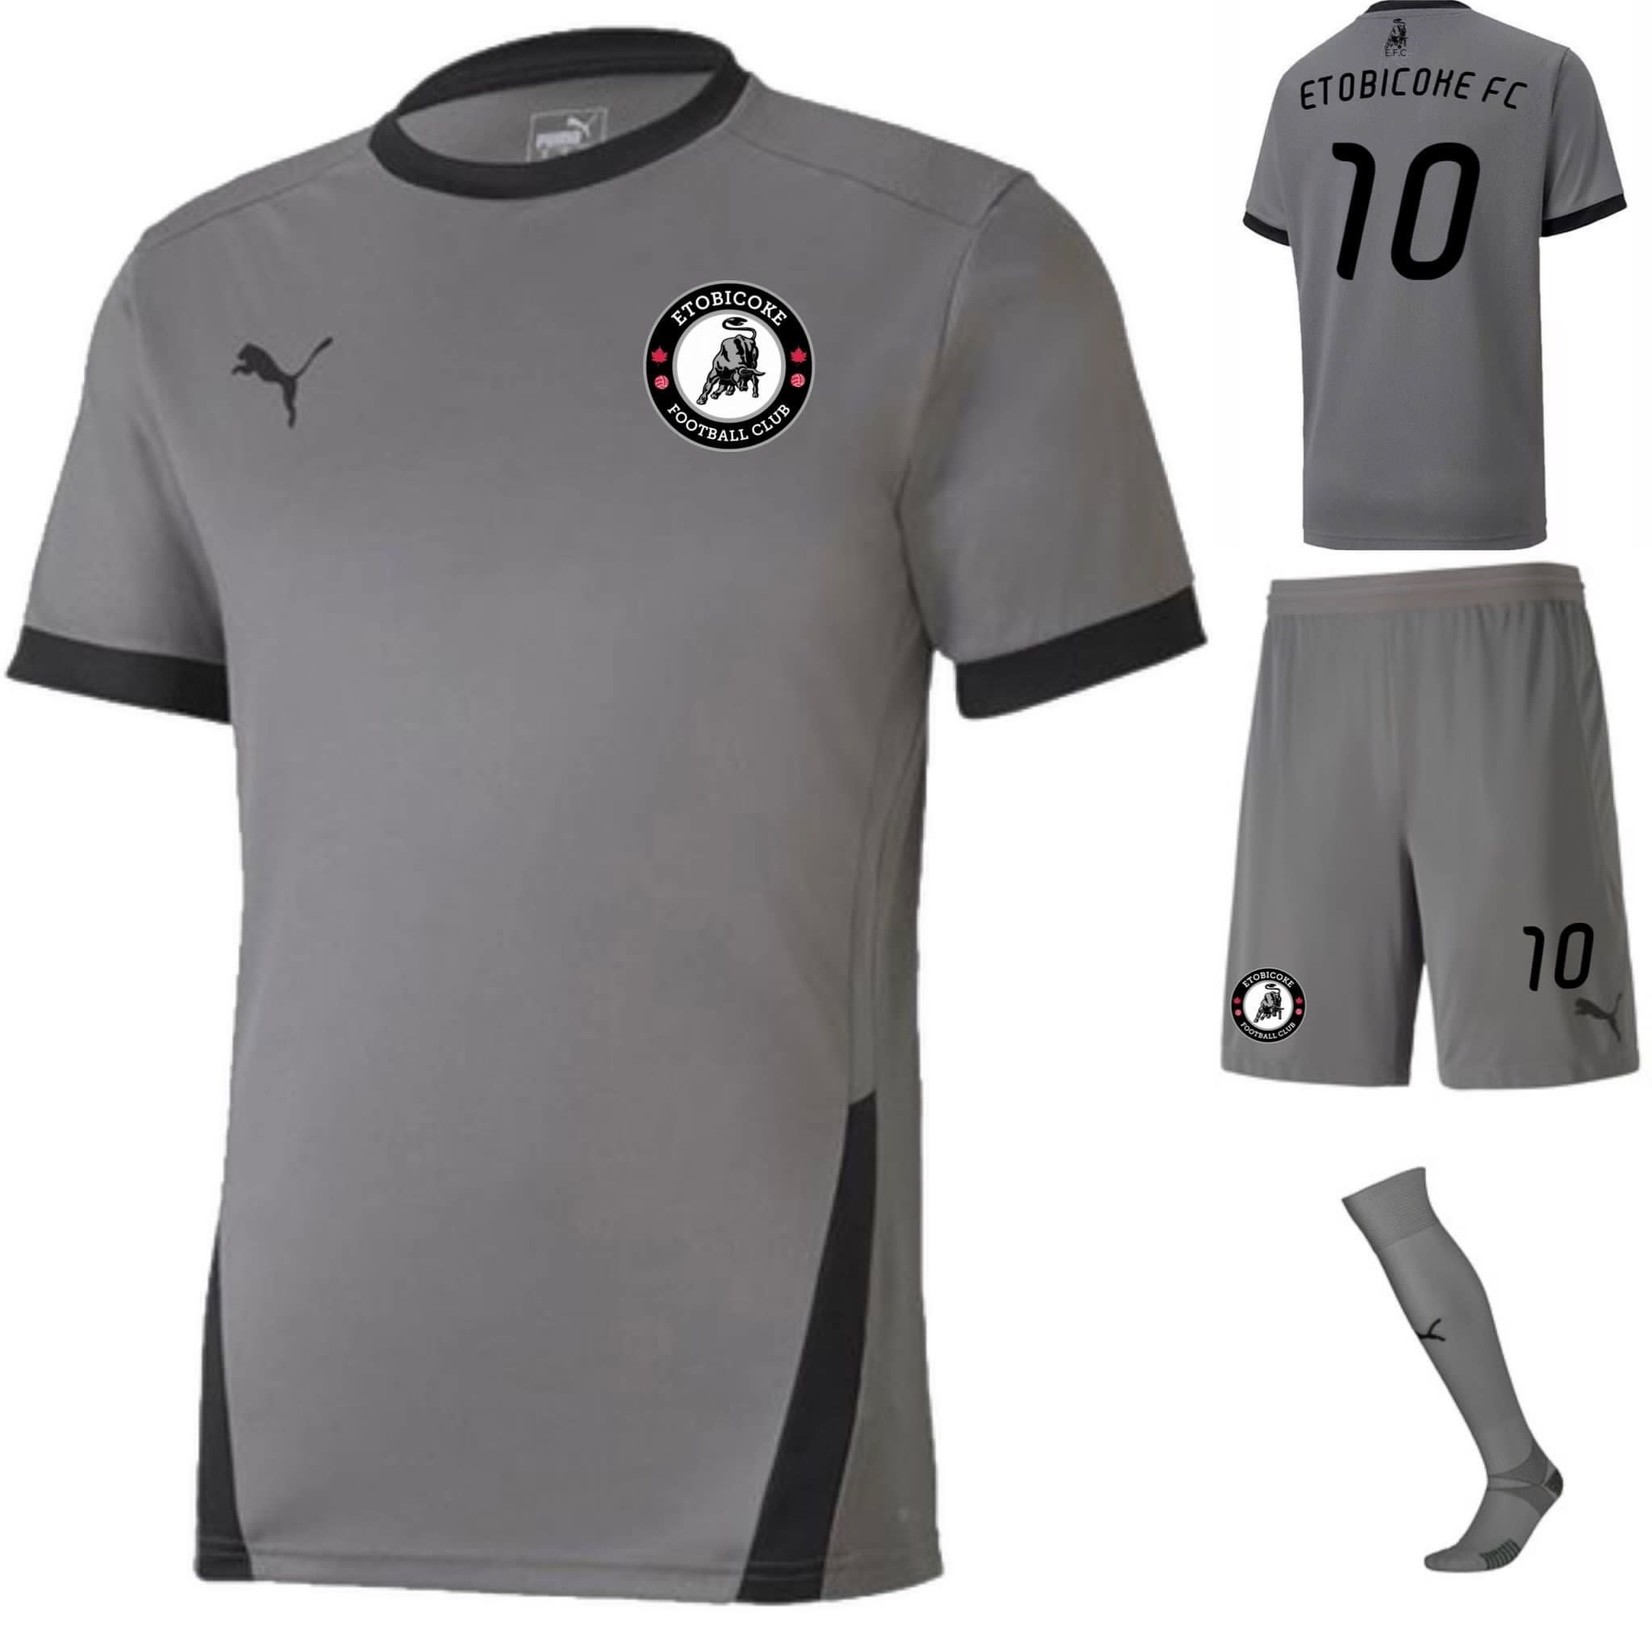 Puma Etobicoke FC - Away Player Kit (Youth)